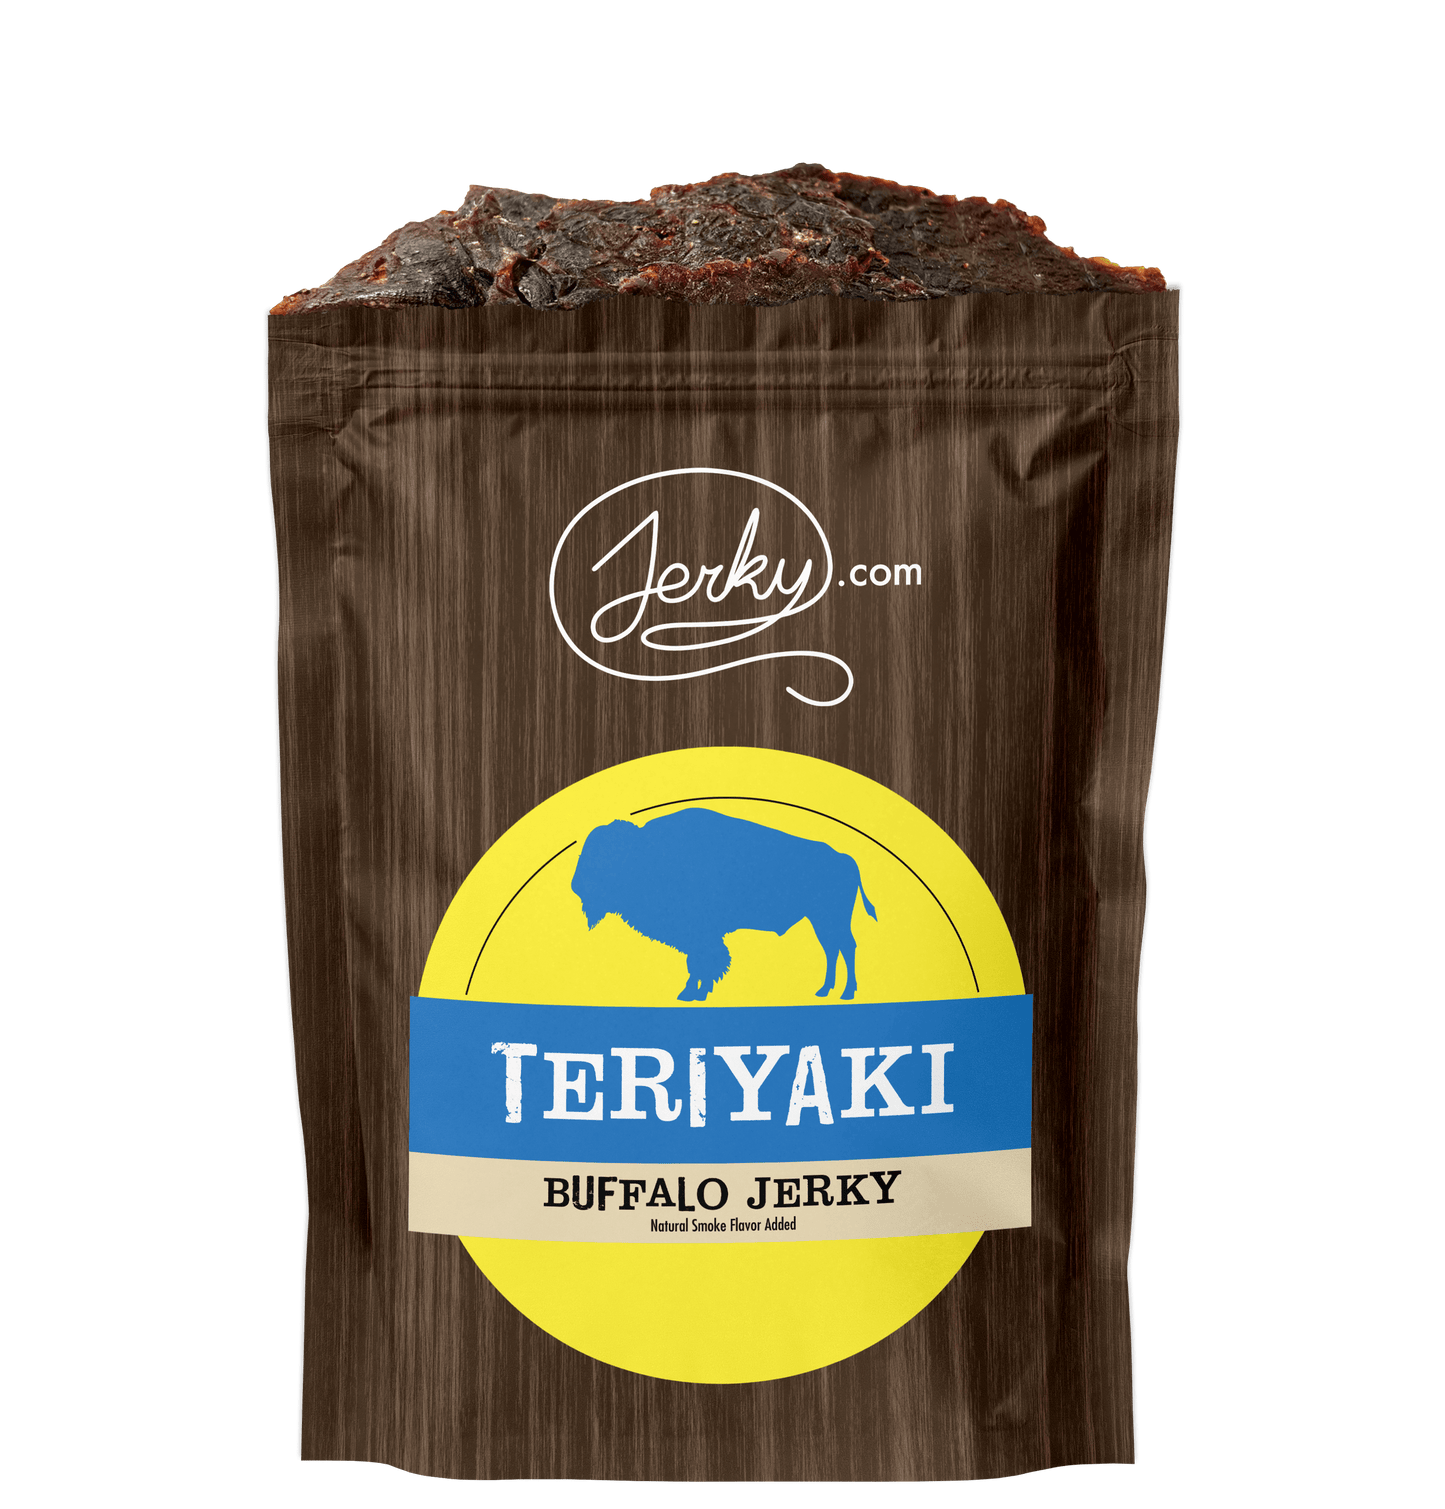 All-Natural Buffalo Jerky - Teriyaki by Jerky.com